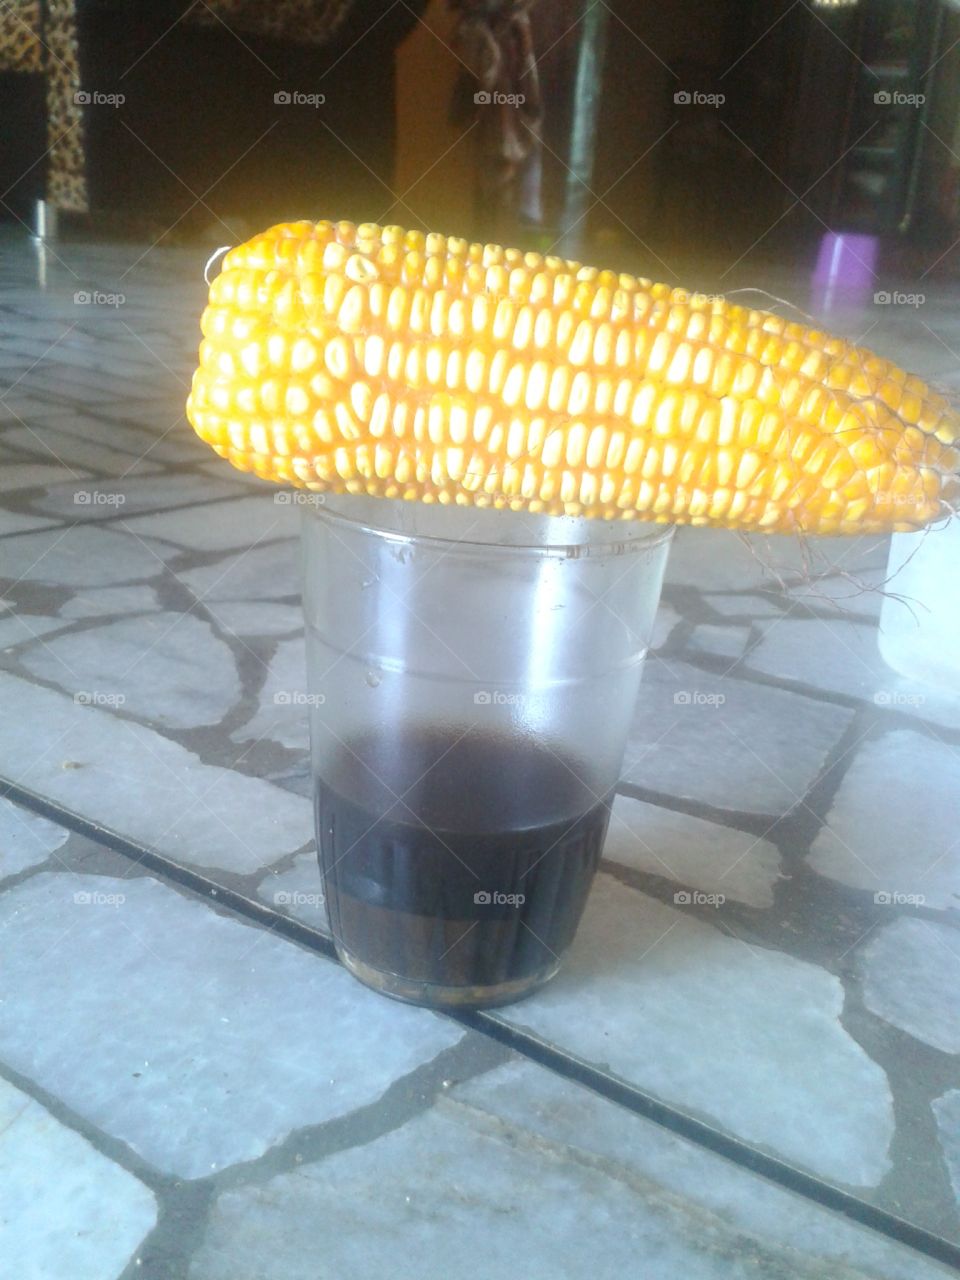 corn cover the glass of coffea